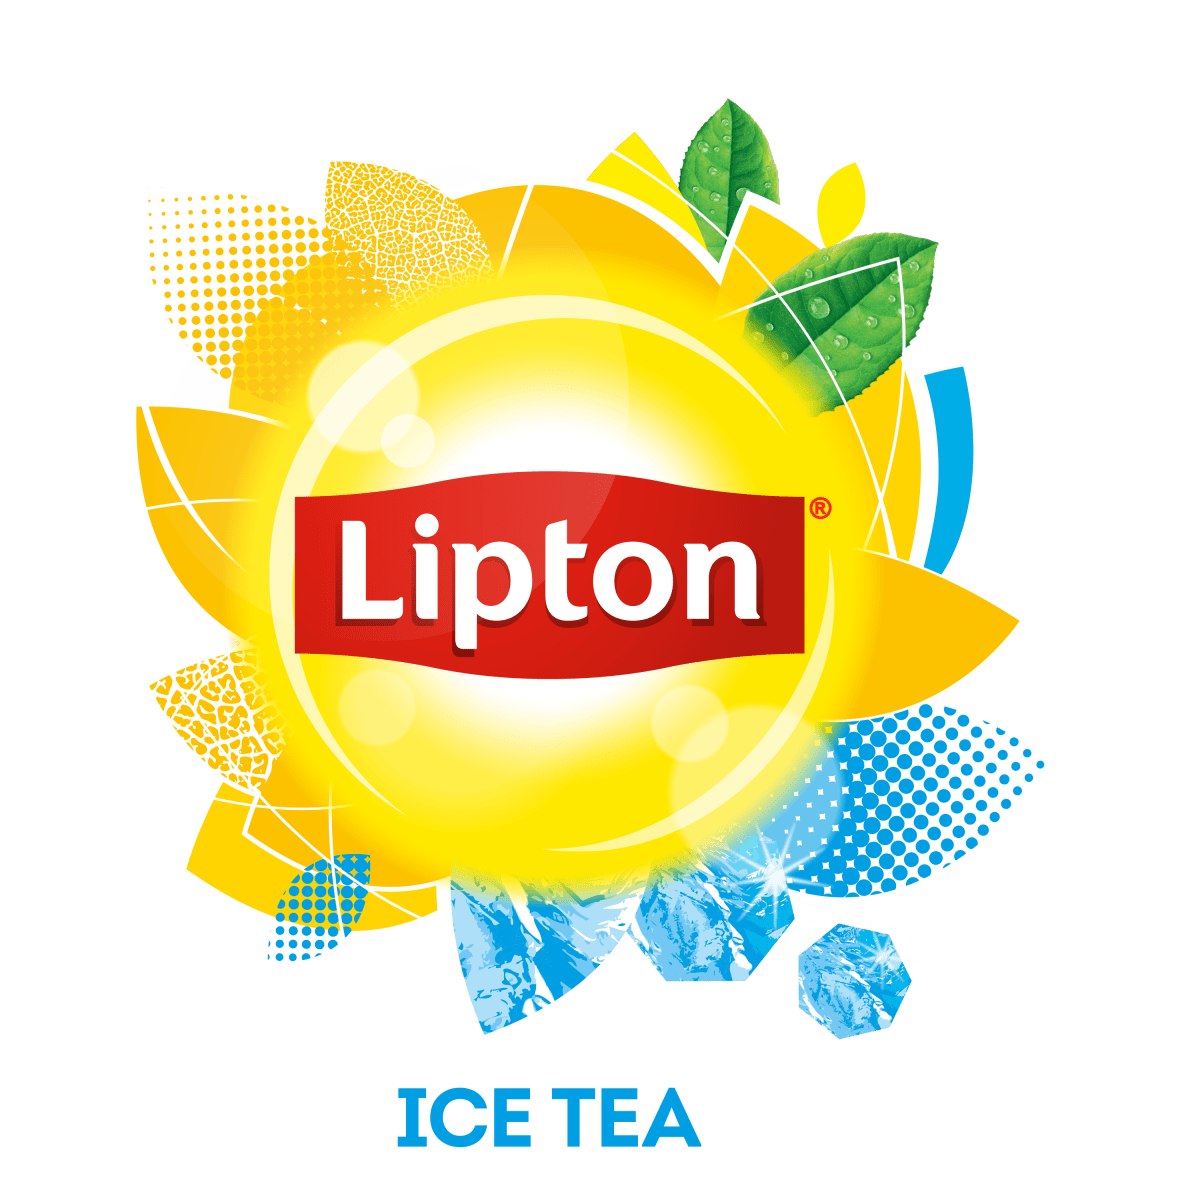 Lipton Ice Tea logo